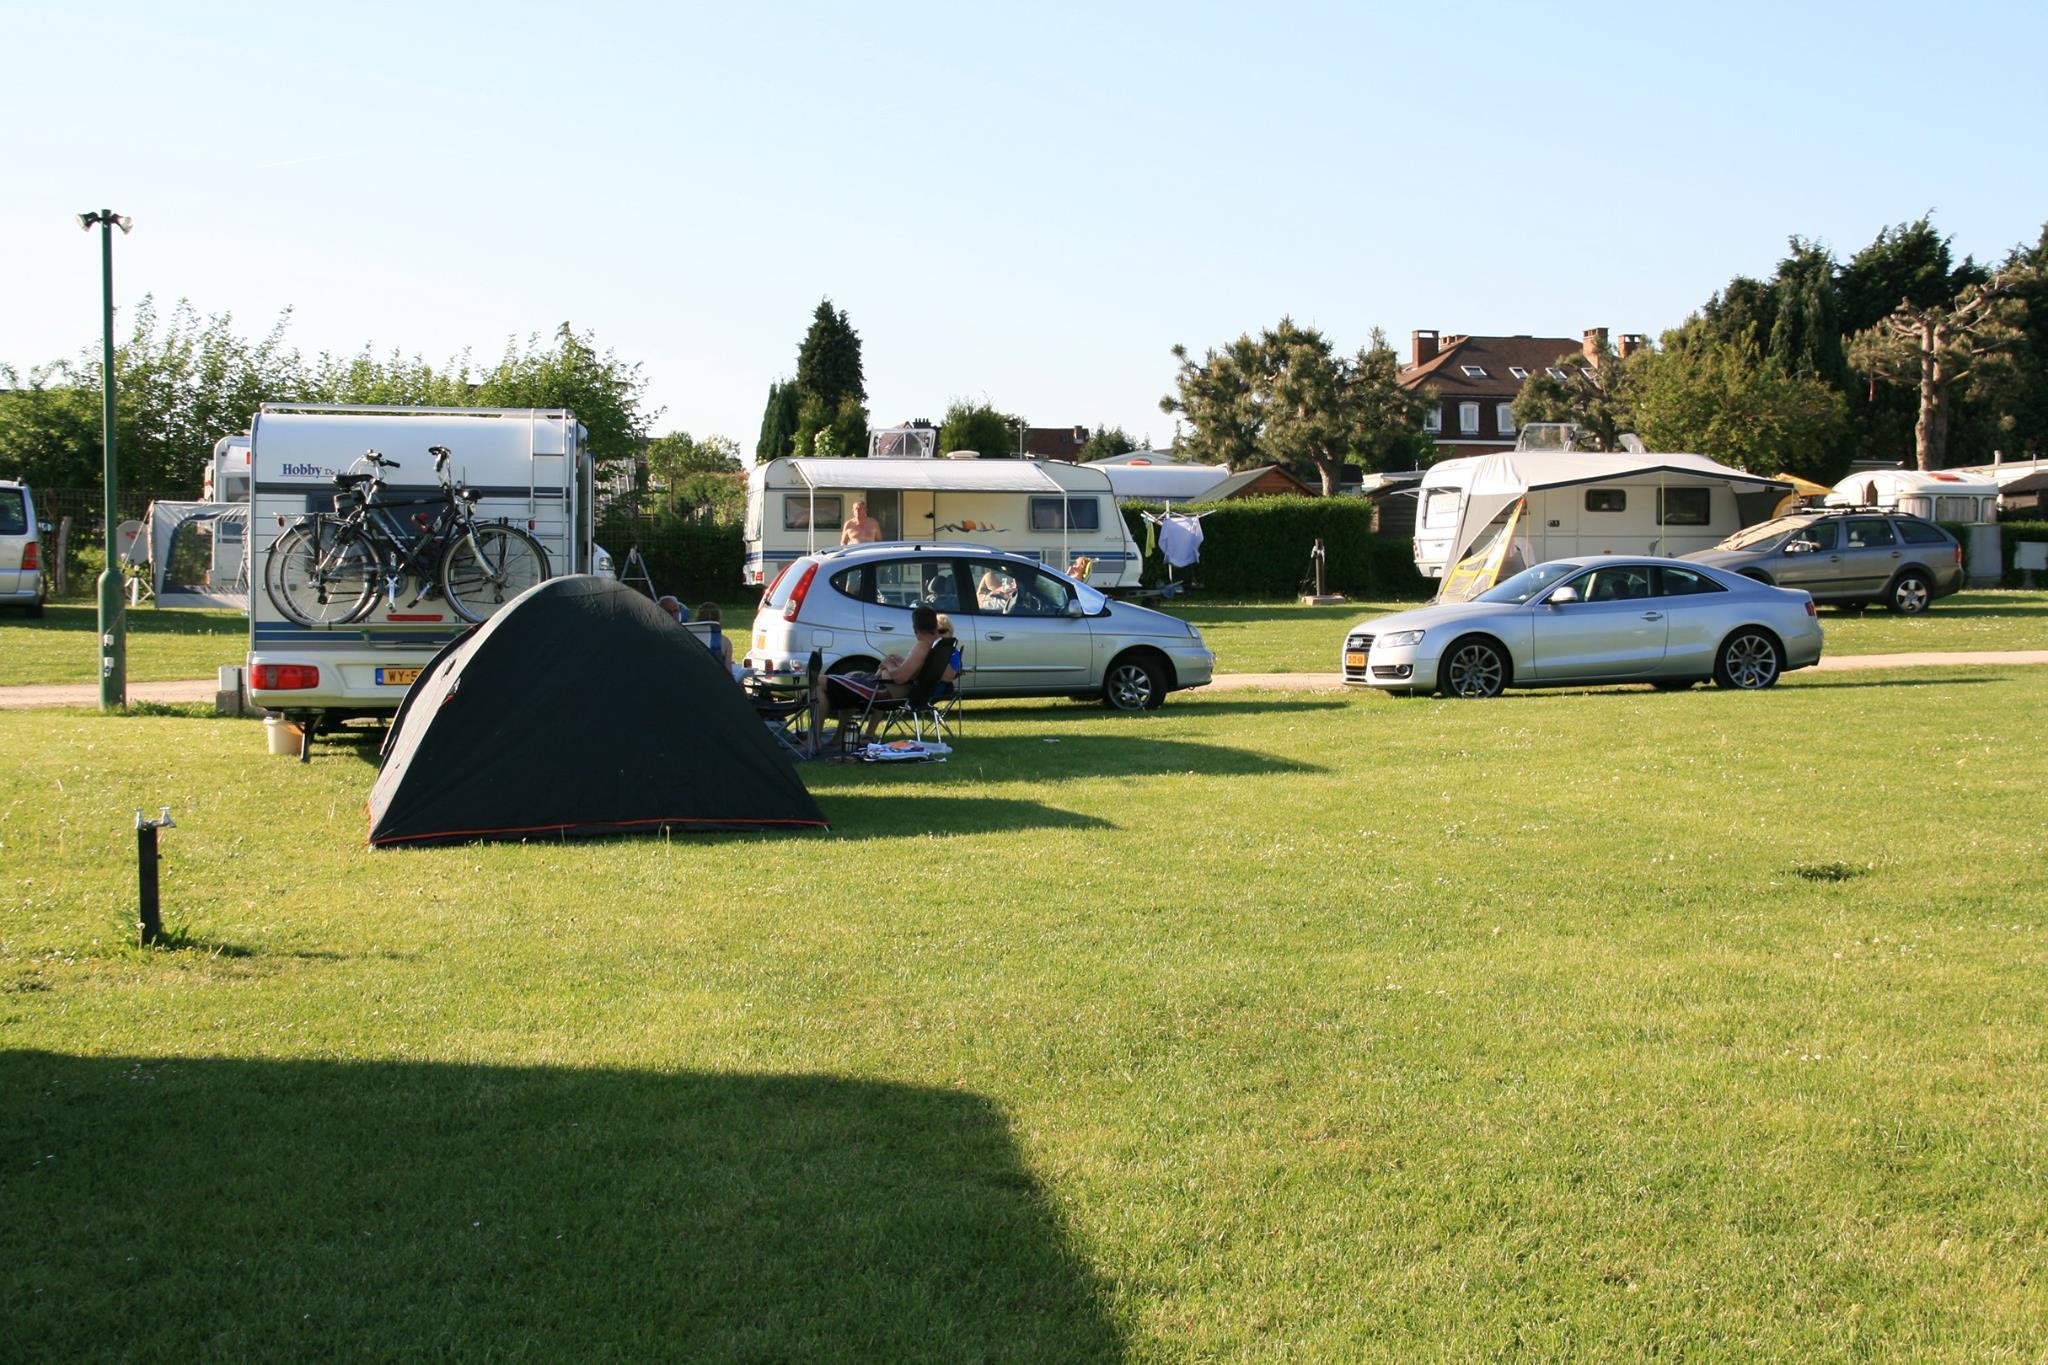 Establishment Camping Druivenland - Overijse